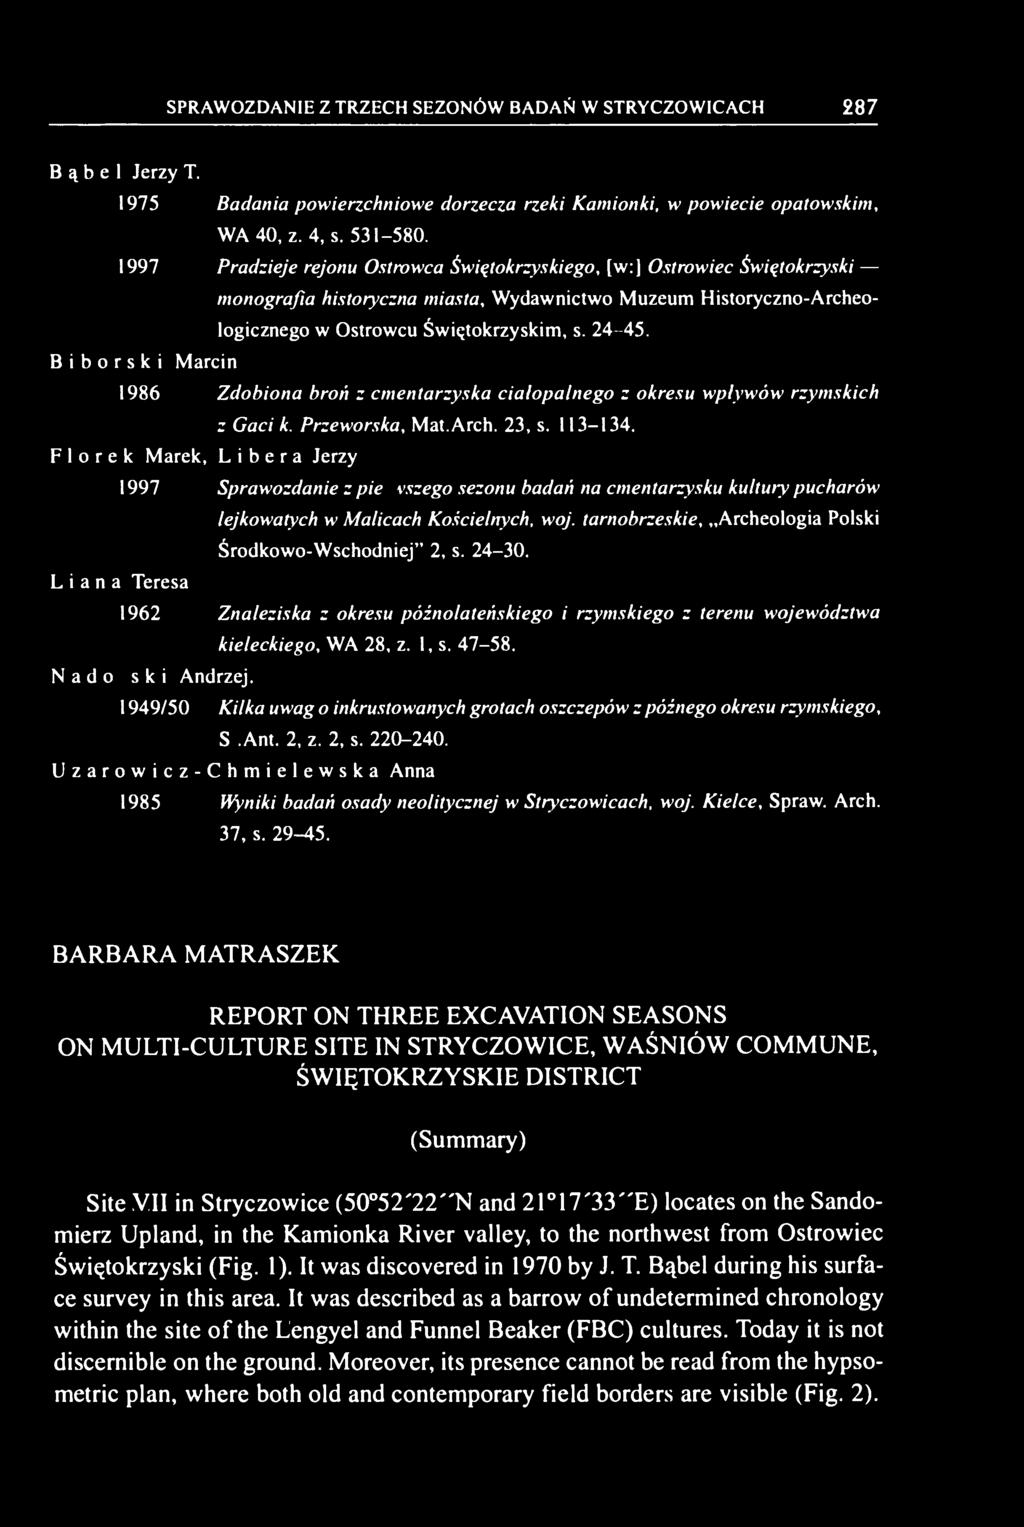 B i b o r s k i Marcin 1986 Zdobiona broń z cmentarzyska ciałopalnego z okresu wpływów rzymskich z Gaci k. Przeworska, Mat. Arch. 23, s. 113-134.